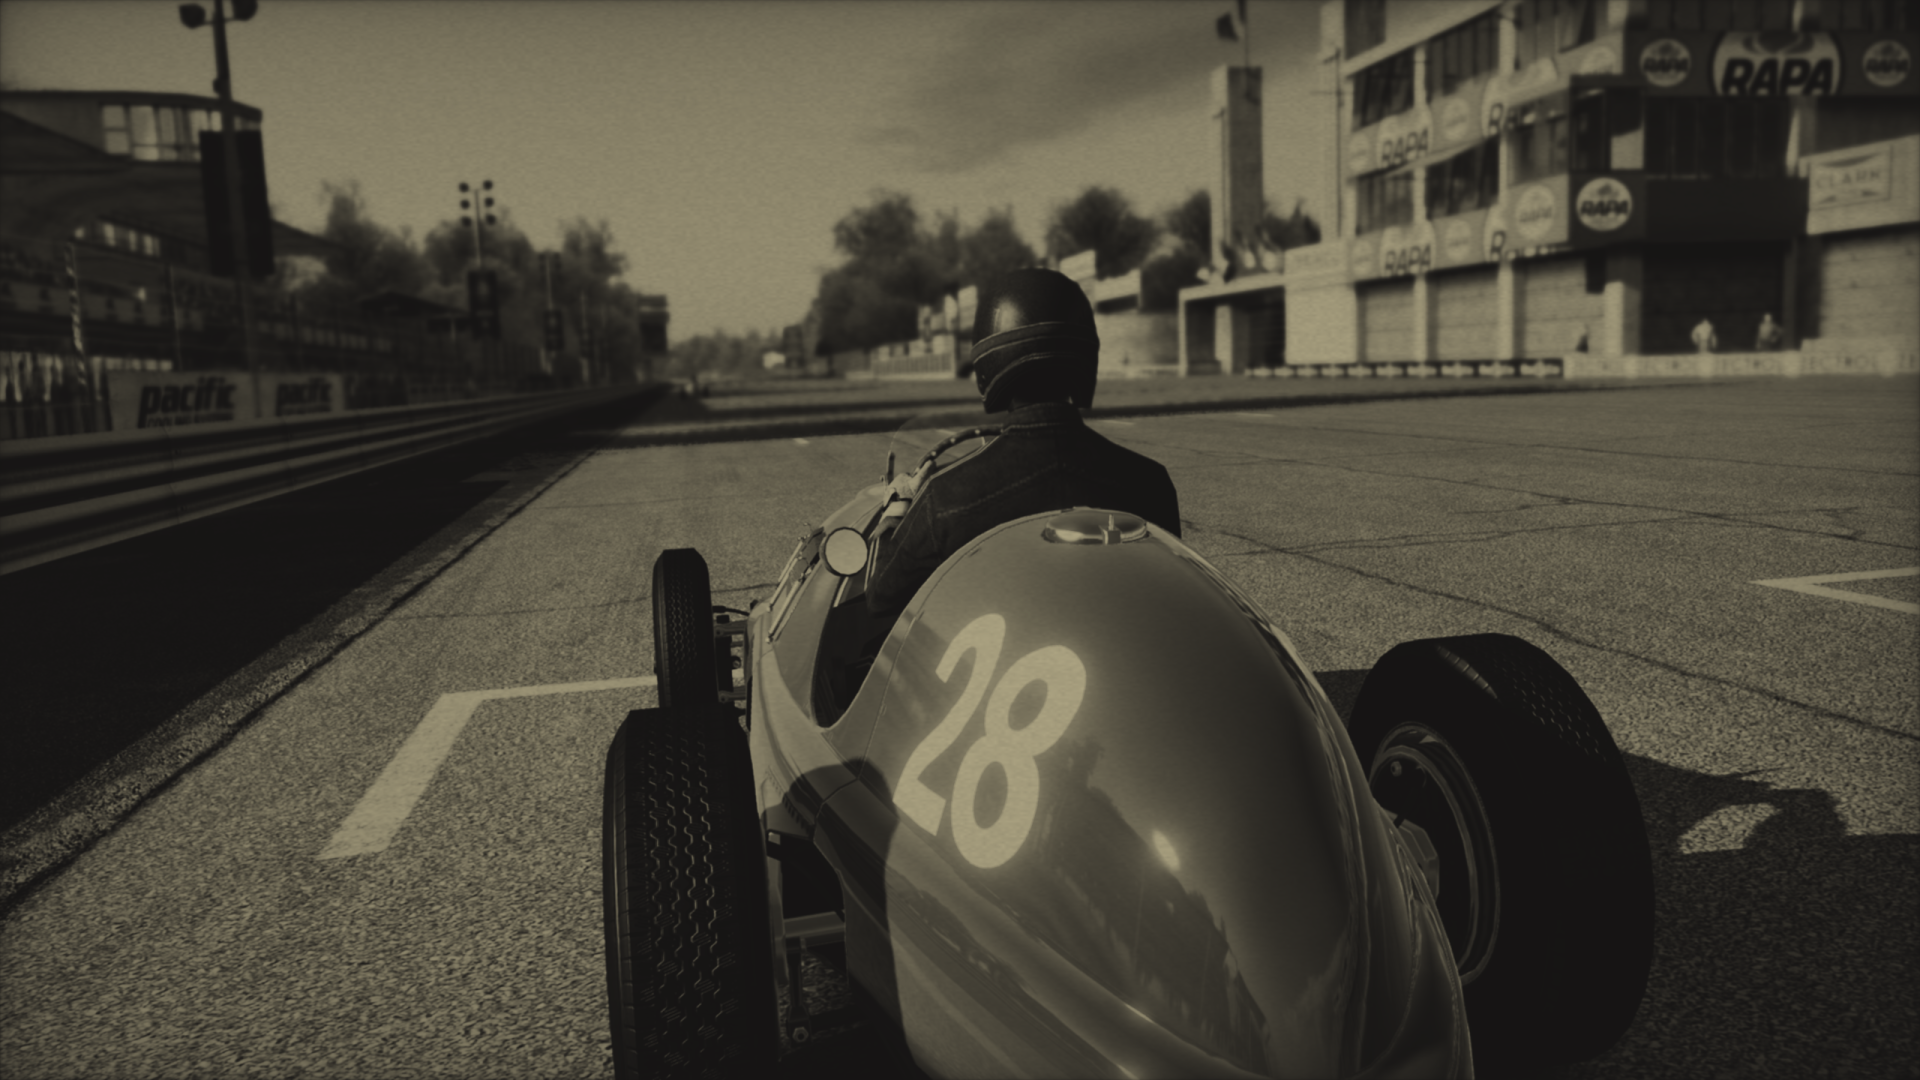 ferrari racing legends pc download download